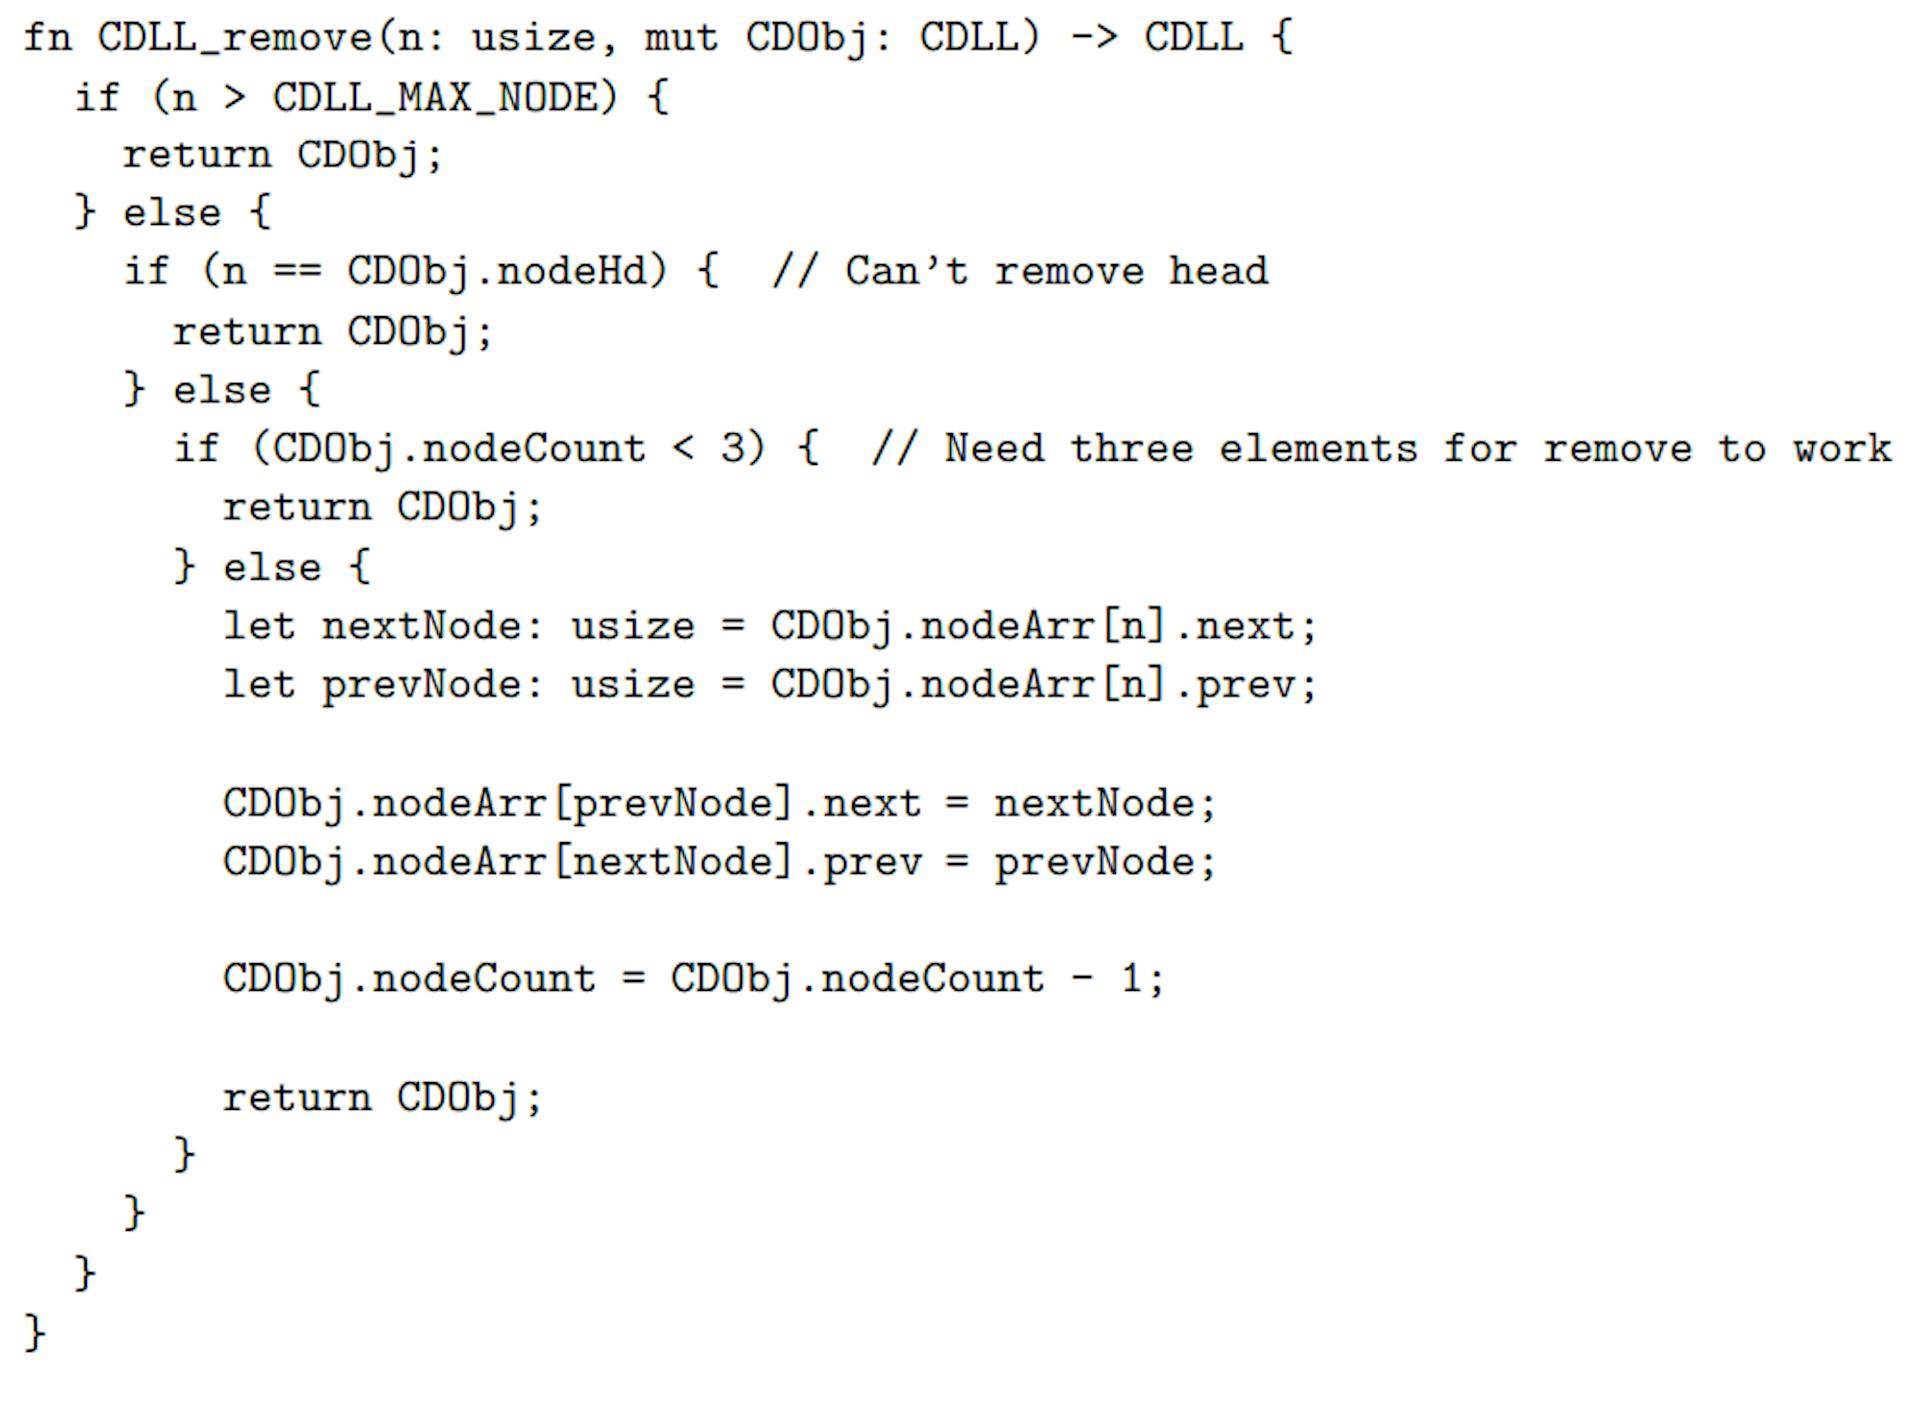 Figure 4: cdll_remove() function in RAR.